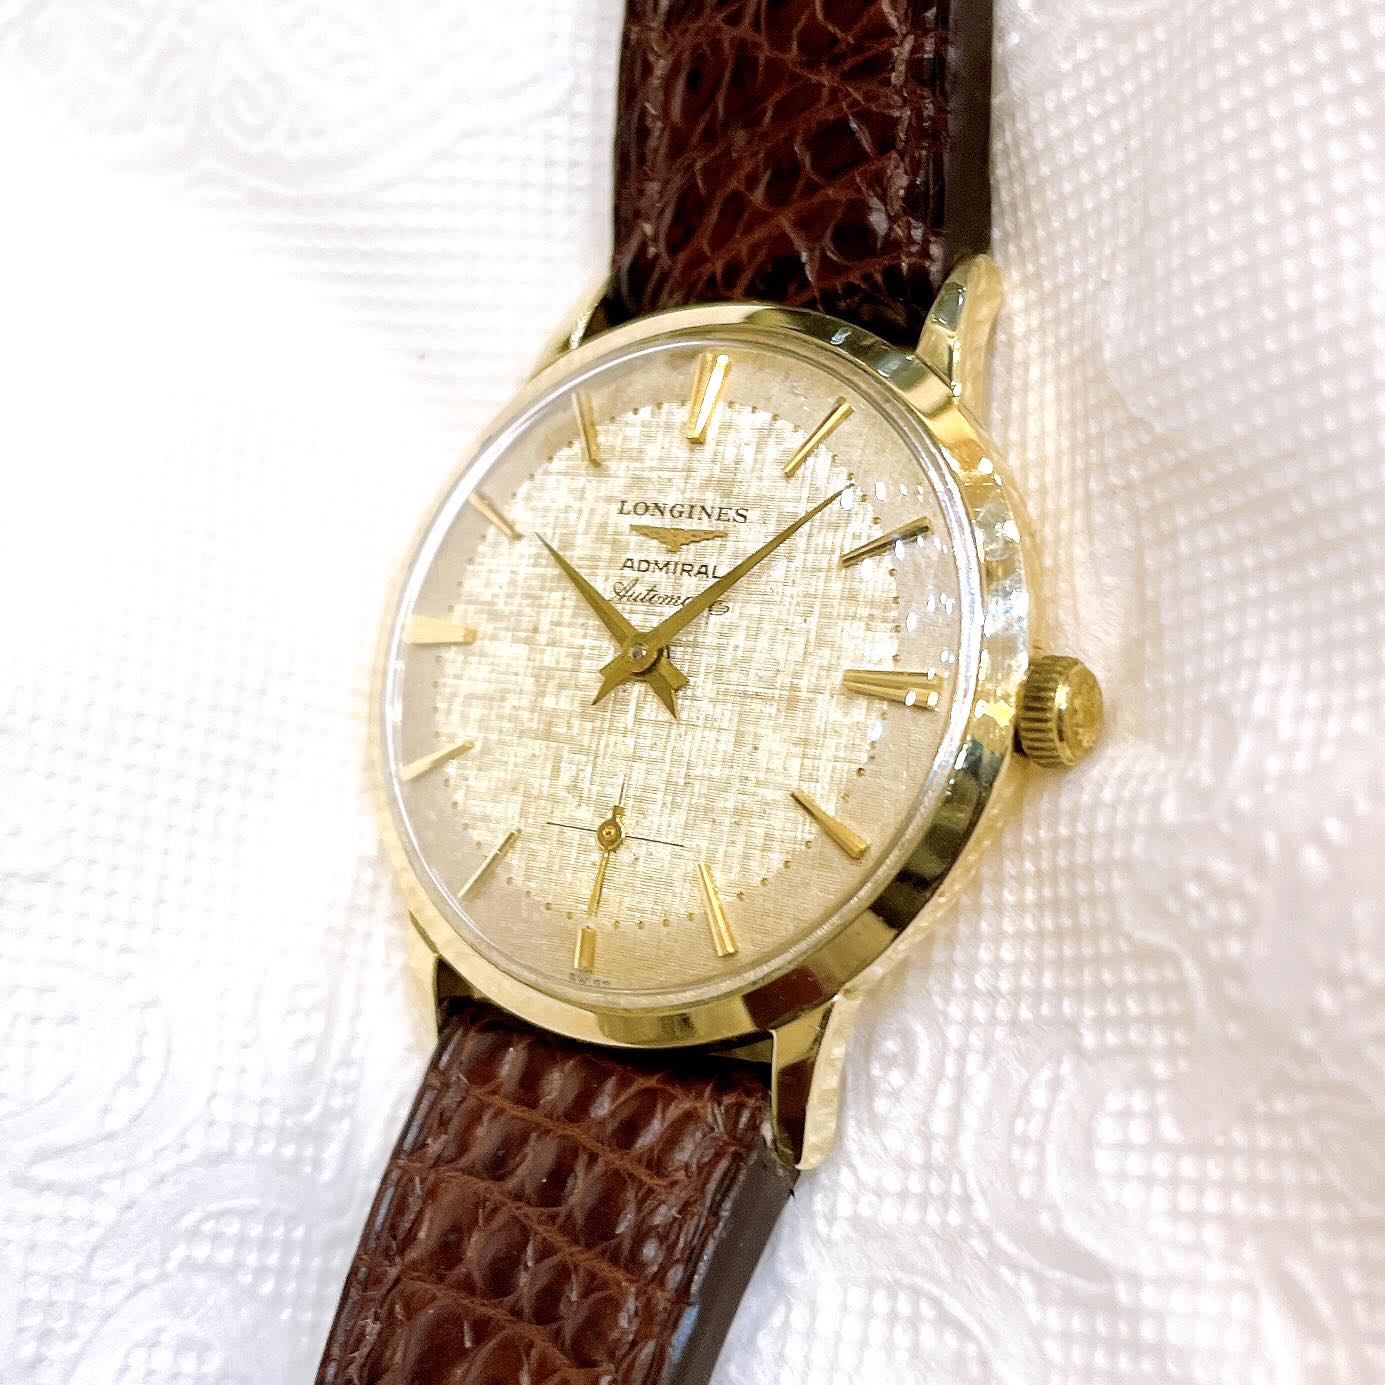 Đồng hồ cổ Longines Admiral automatic vàng đúc 14k nguyên khối chính hãng Thụy Sĩ